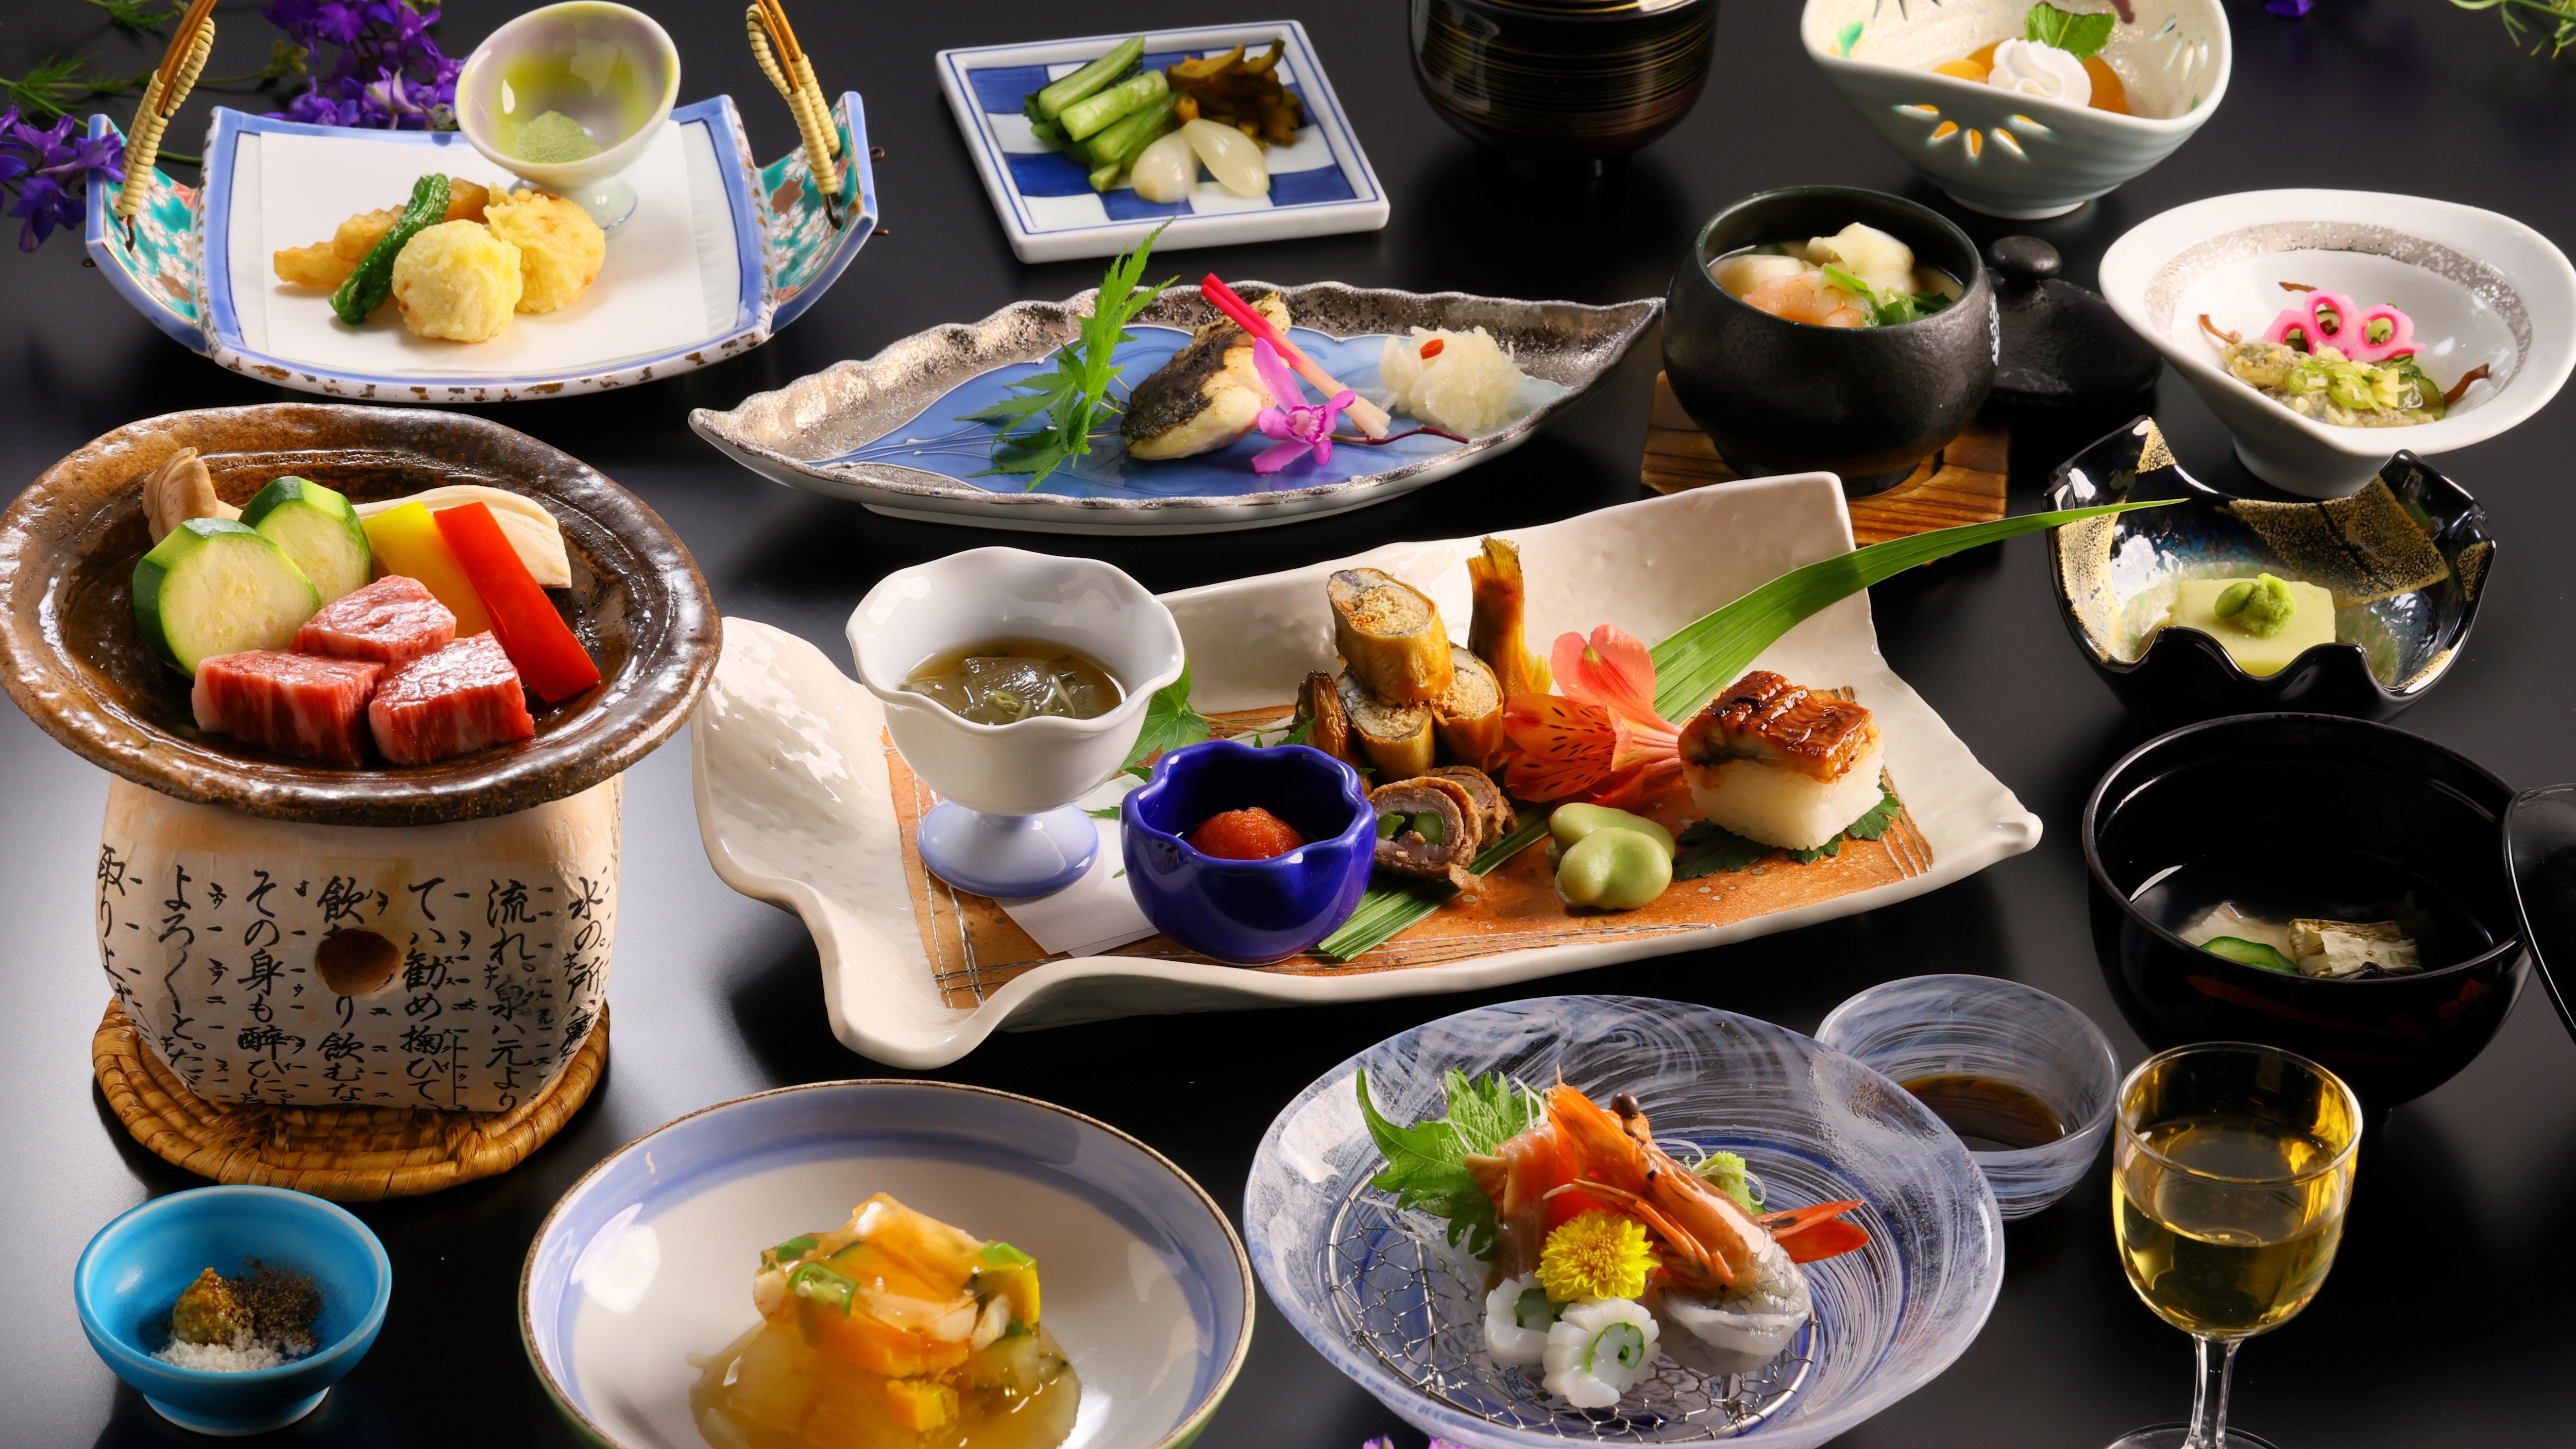 มิถุนายนและกรกฎาคม 2554 หลักสูตรการทำอาหารทาคาโนะมิยาบิ